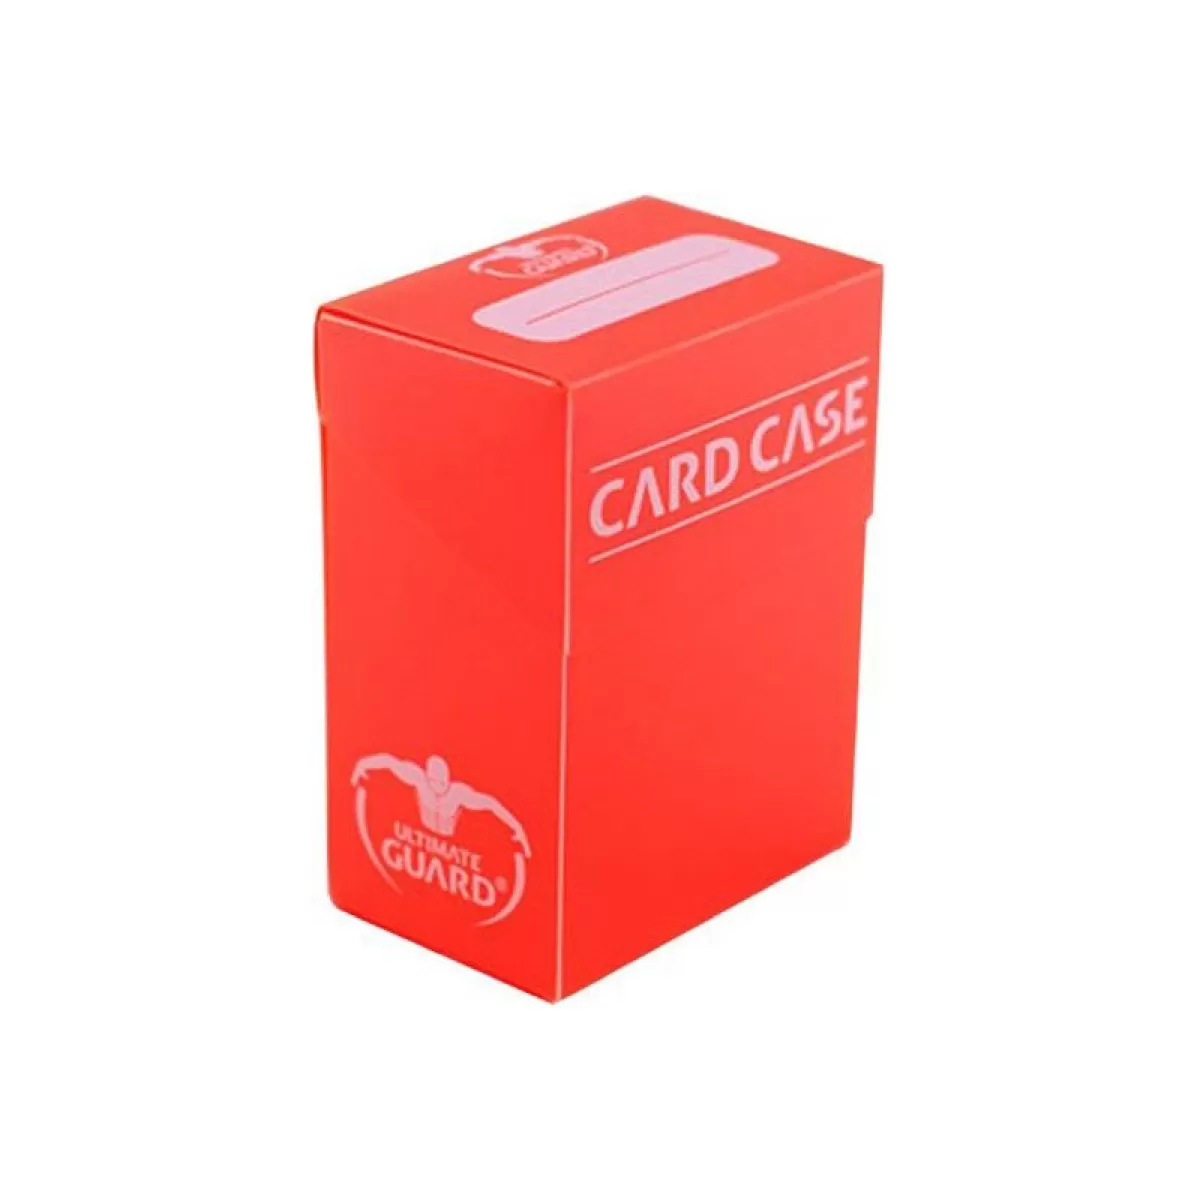 Кутия за карти - ultimate guard (за lcg, tcg и др) 75+ - оранжева